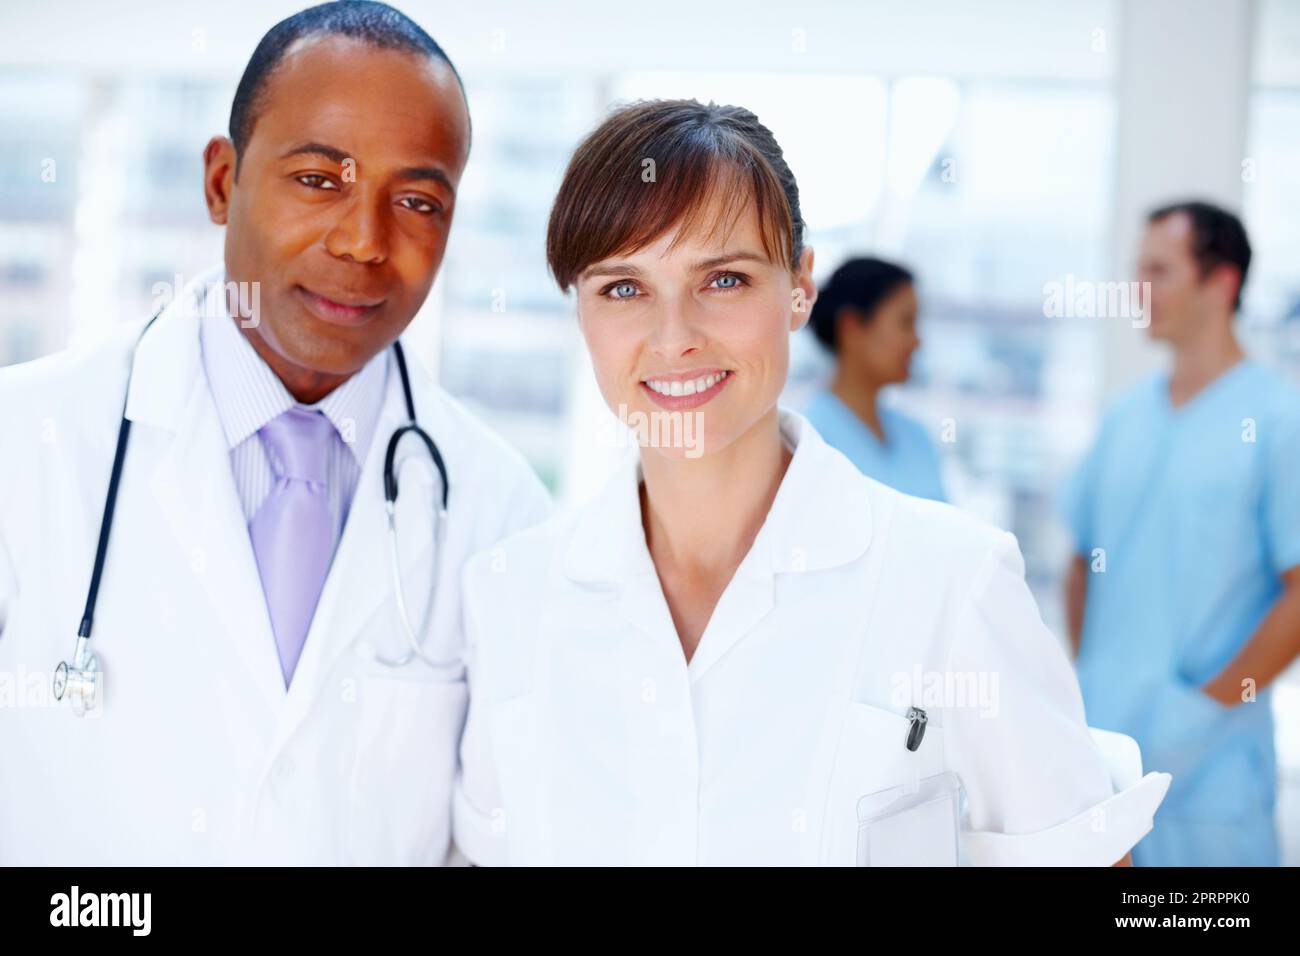 Medizinisches Fachpersonal. Nahaufnahme von Ärzten mit Krankenschwestern im Hintergrund. Stockfoto